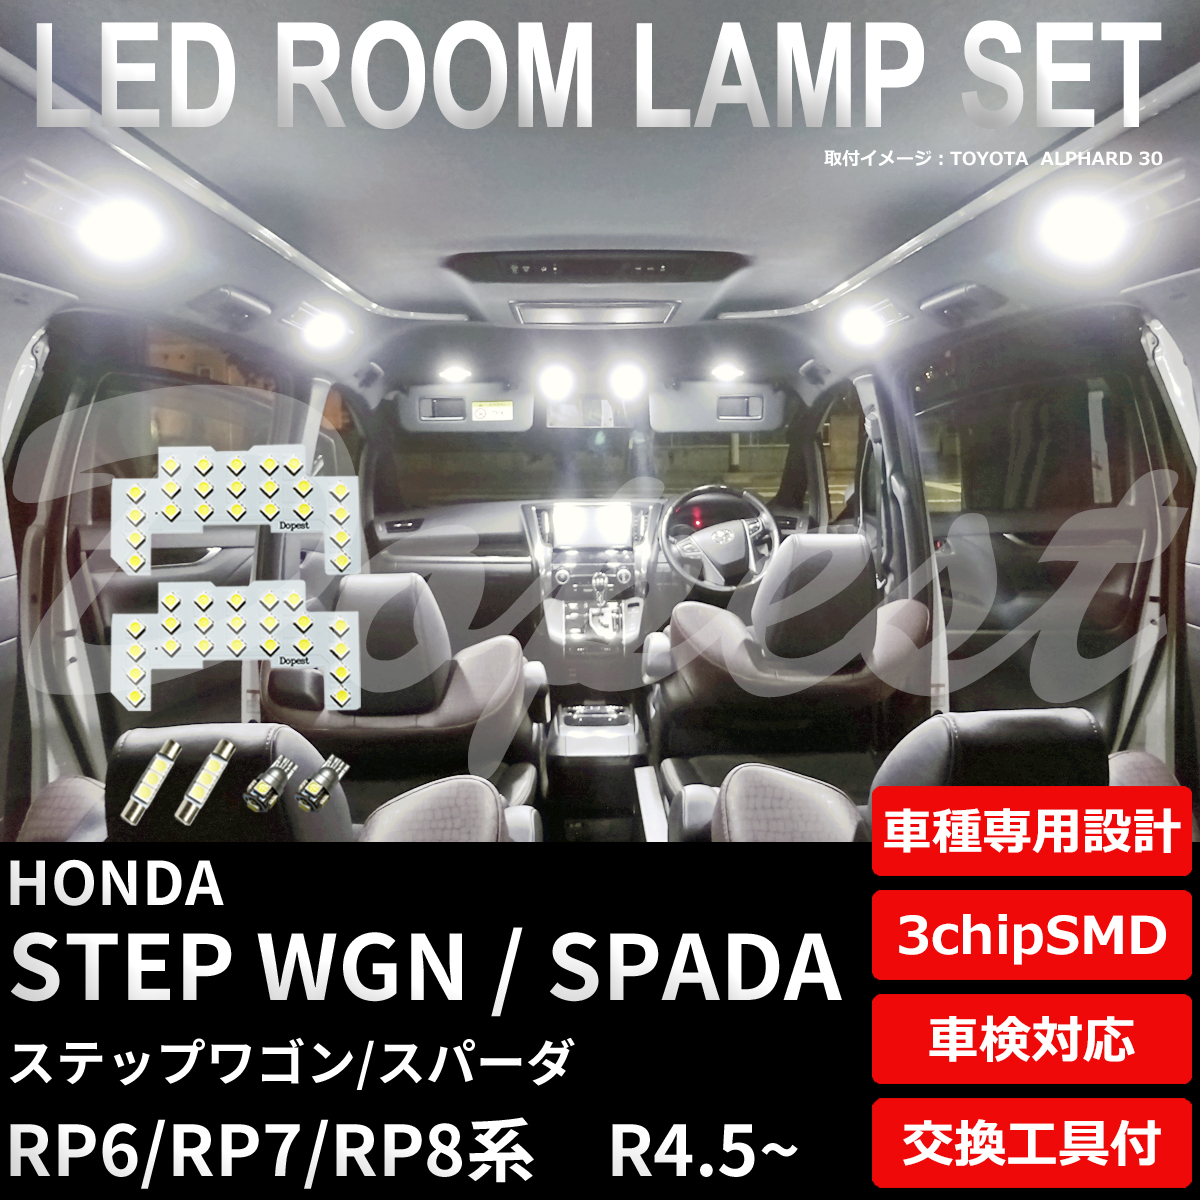 ステップワゴン/スパーダ LEDルームランプセット RP6/7/8系